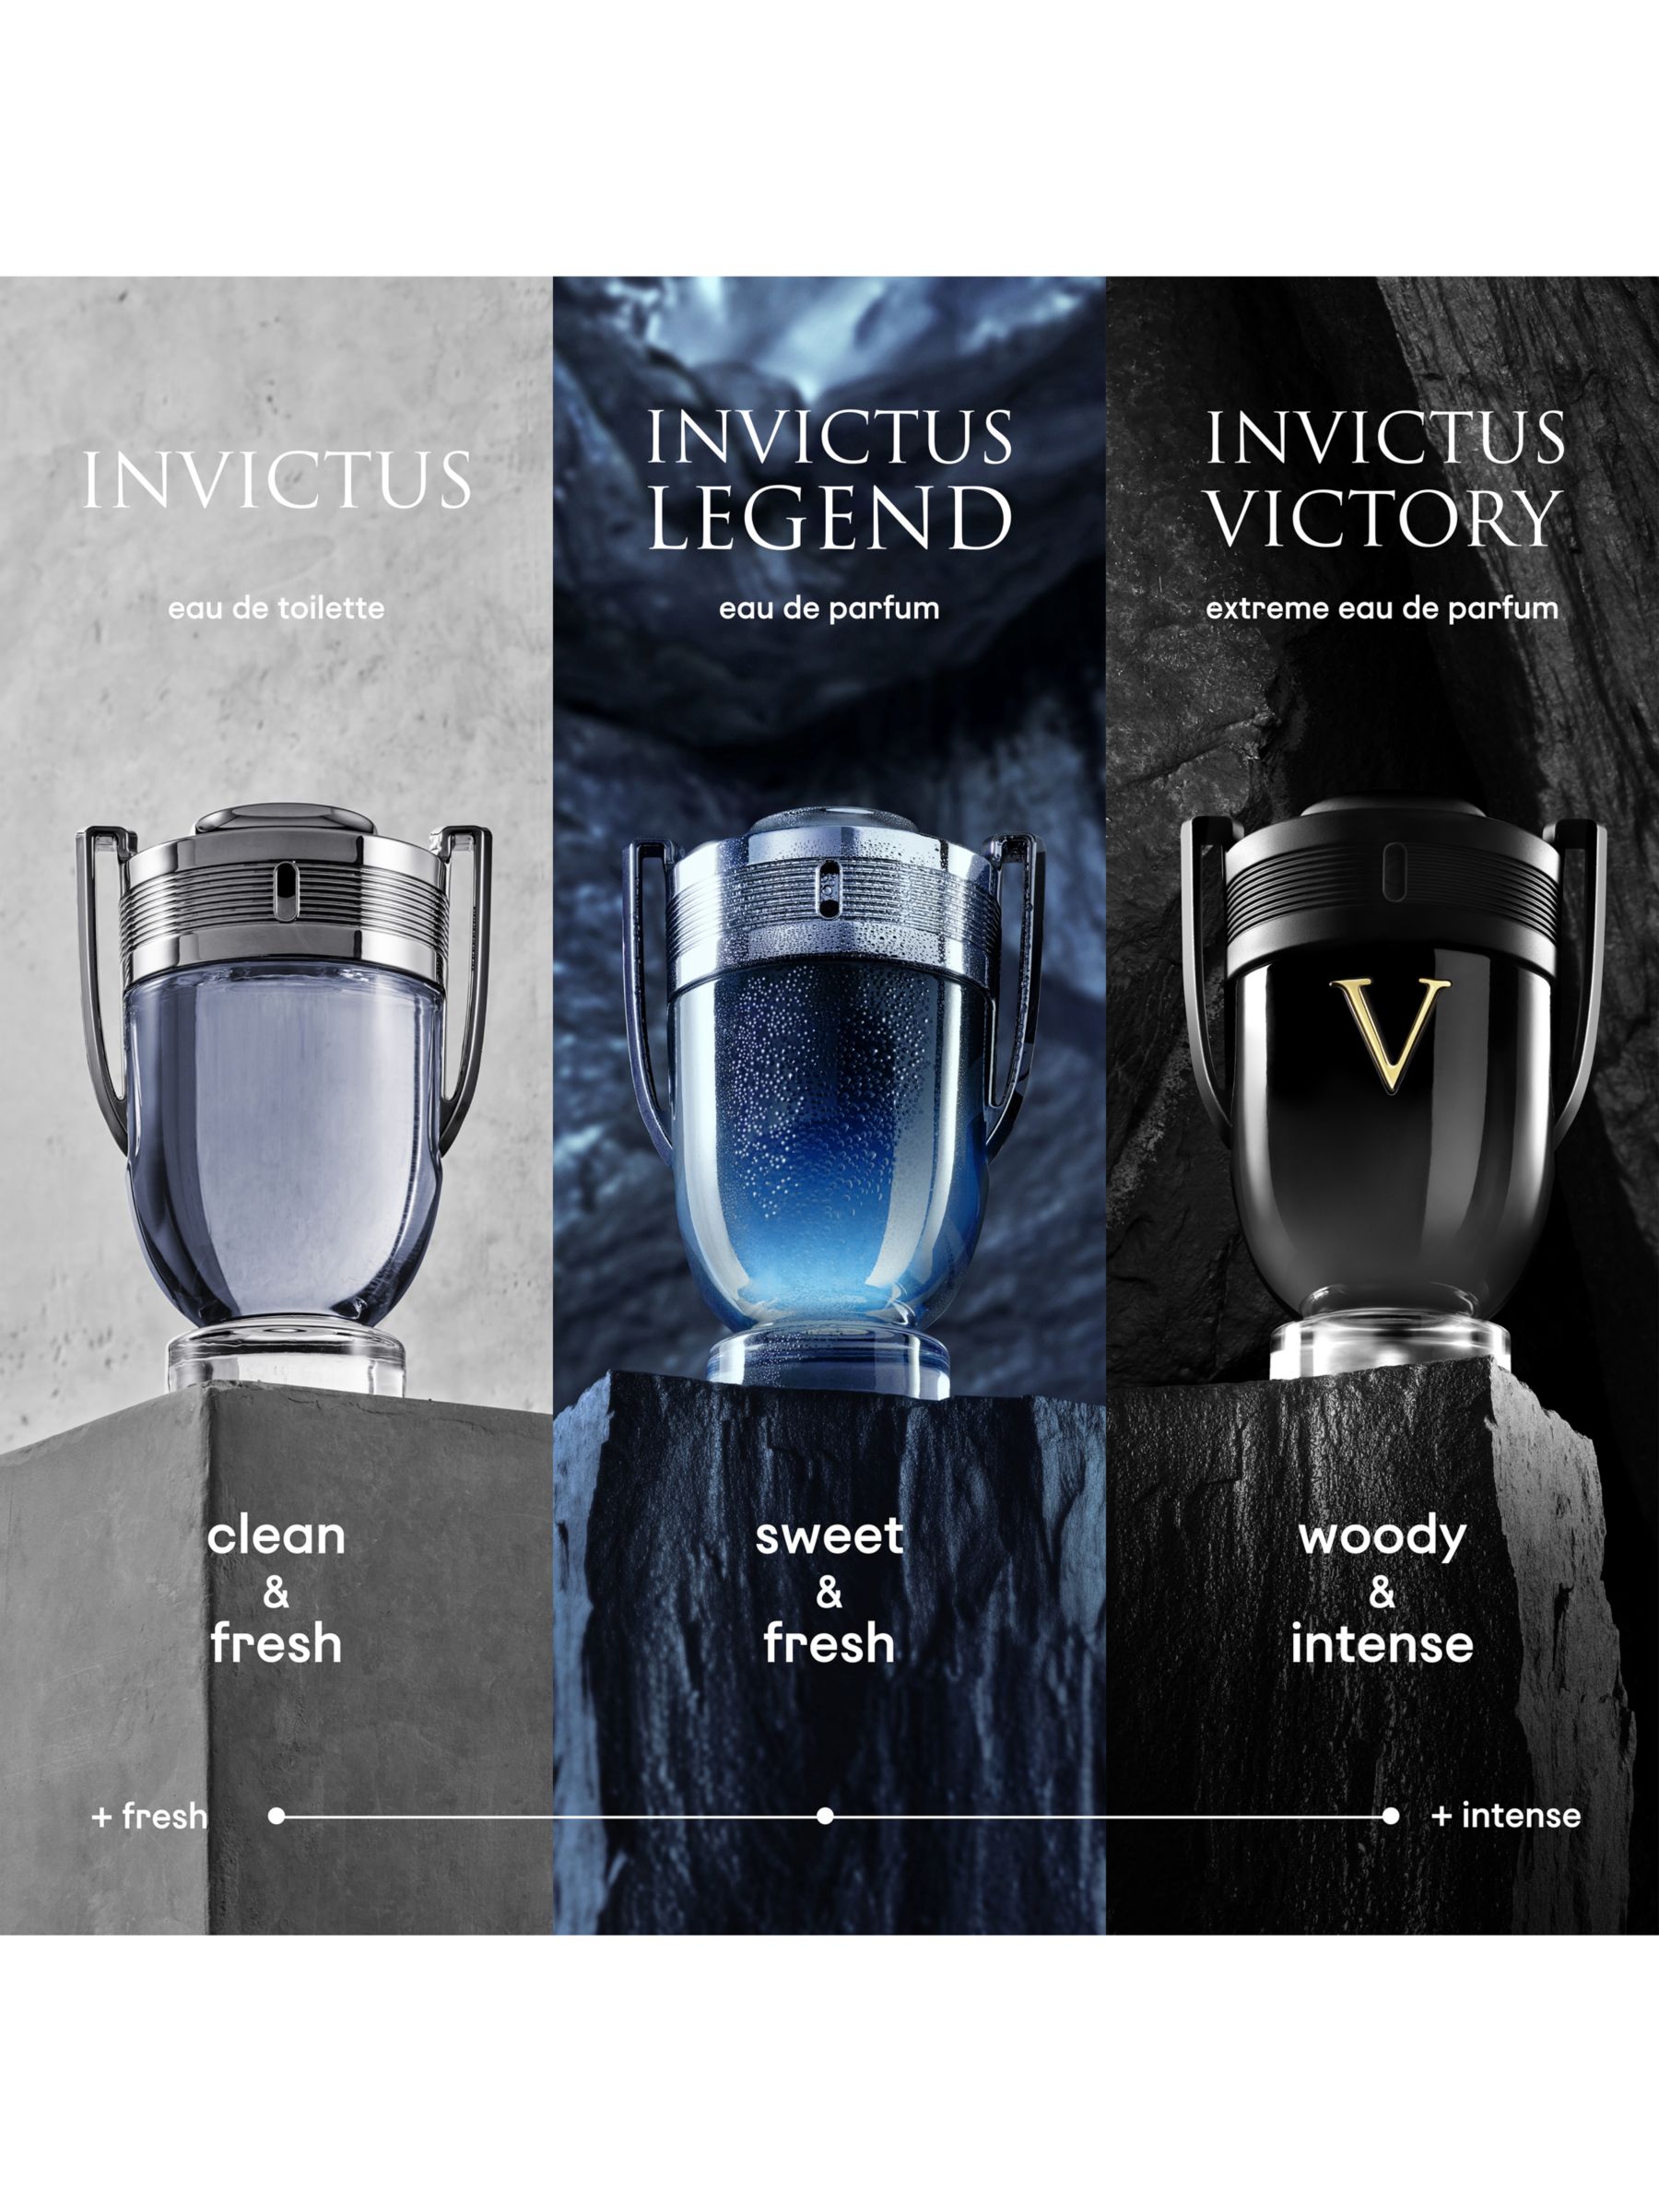 Paco Rabanne Invictus Victory Extreme Eau de Parfum, 50ml at John Lewis  & Partners